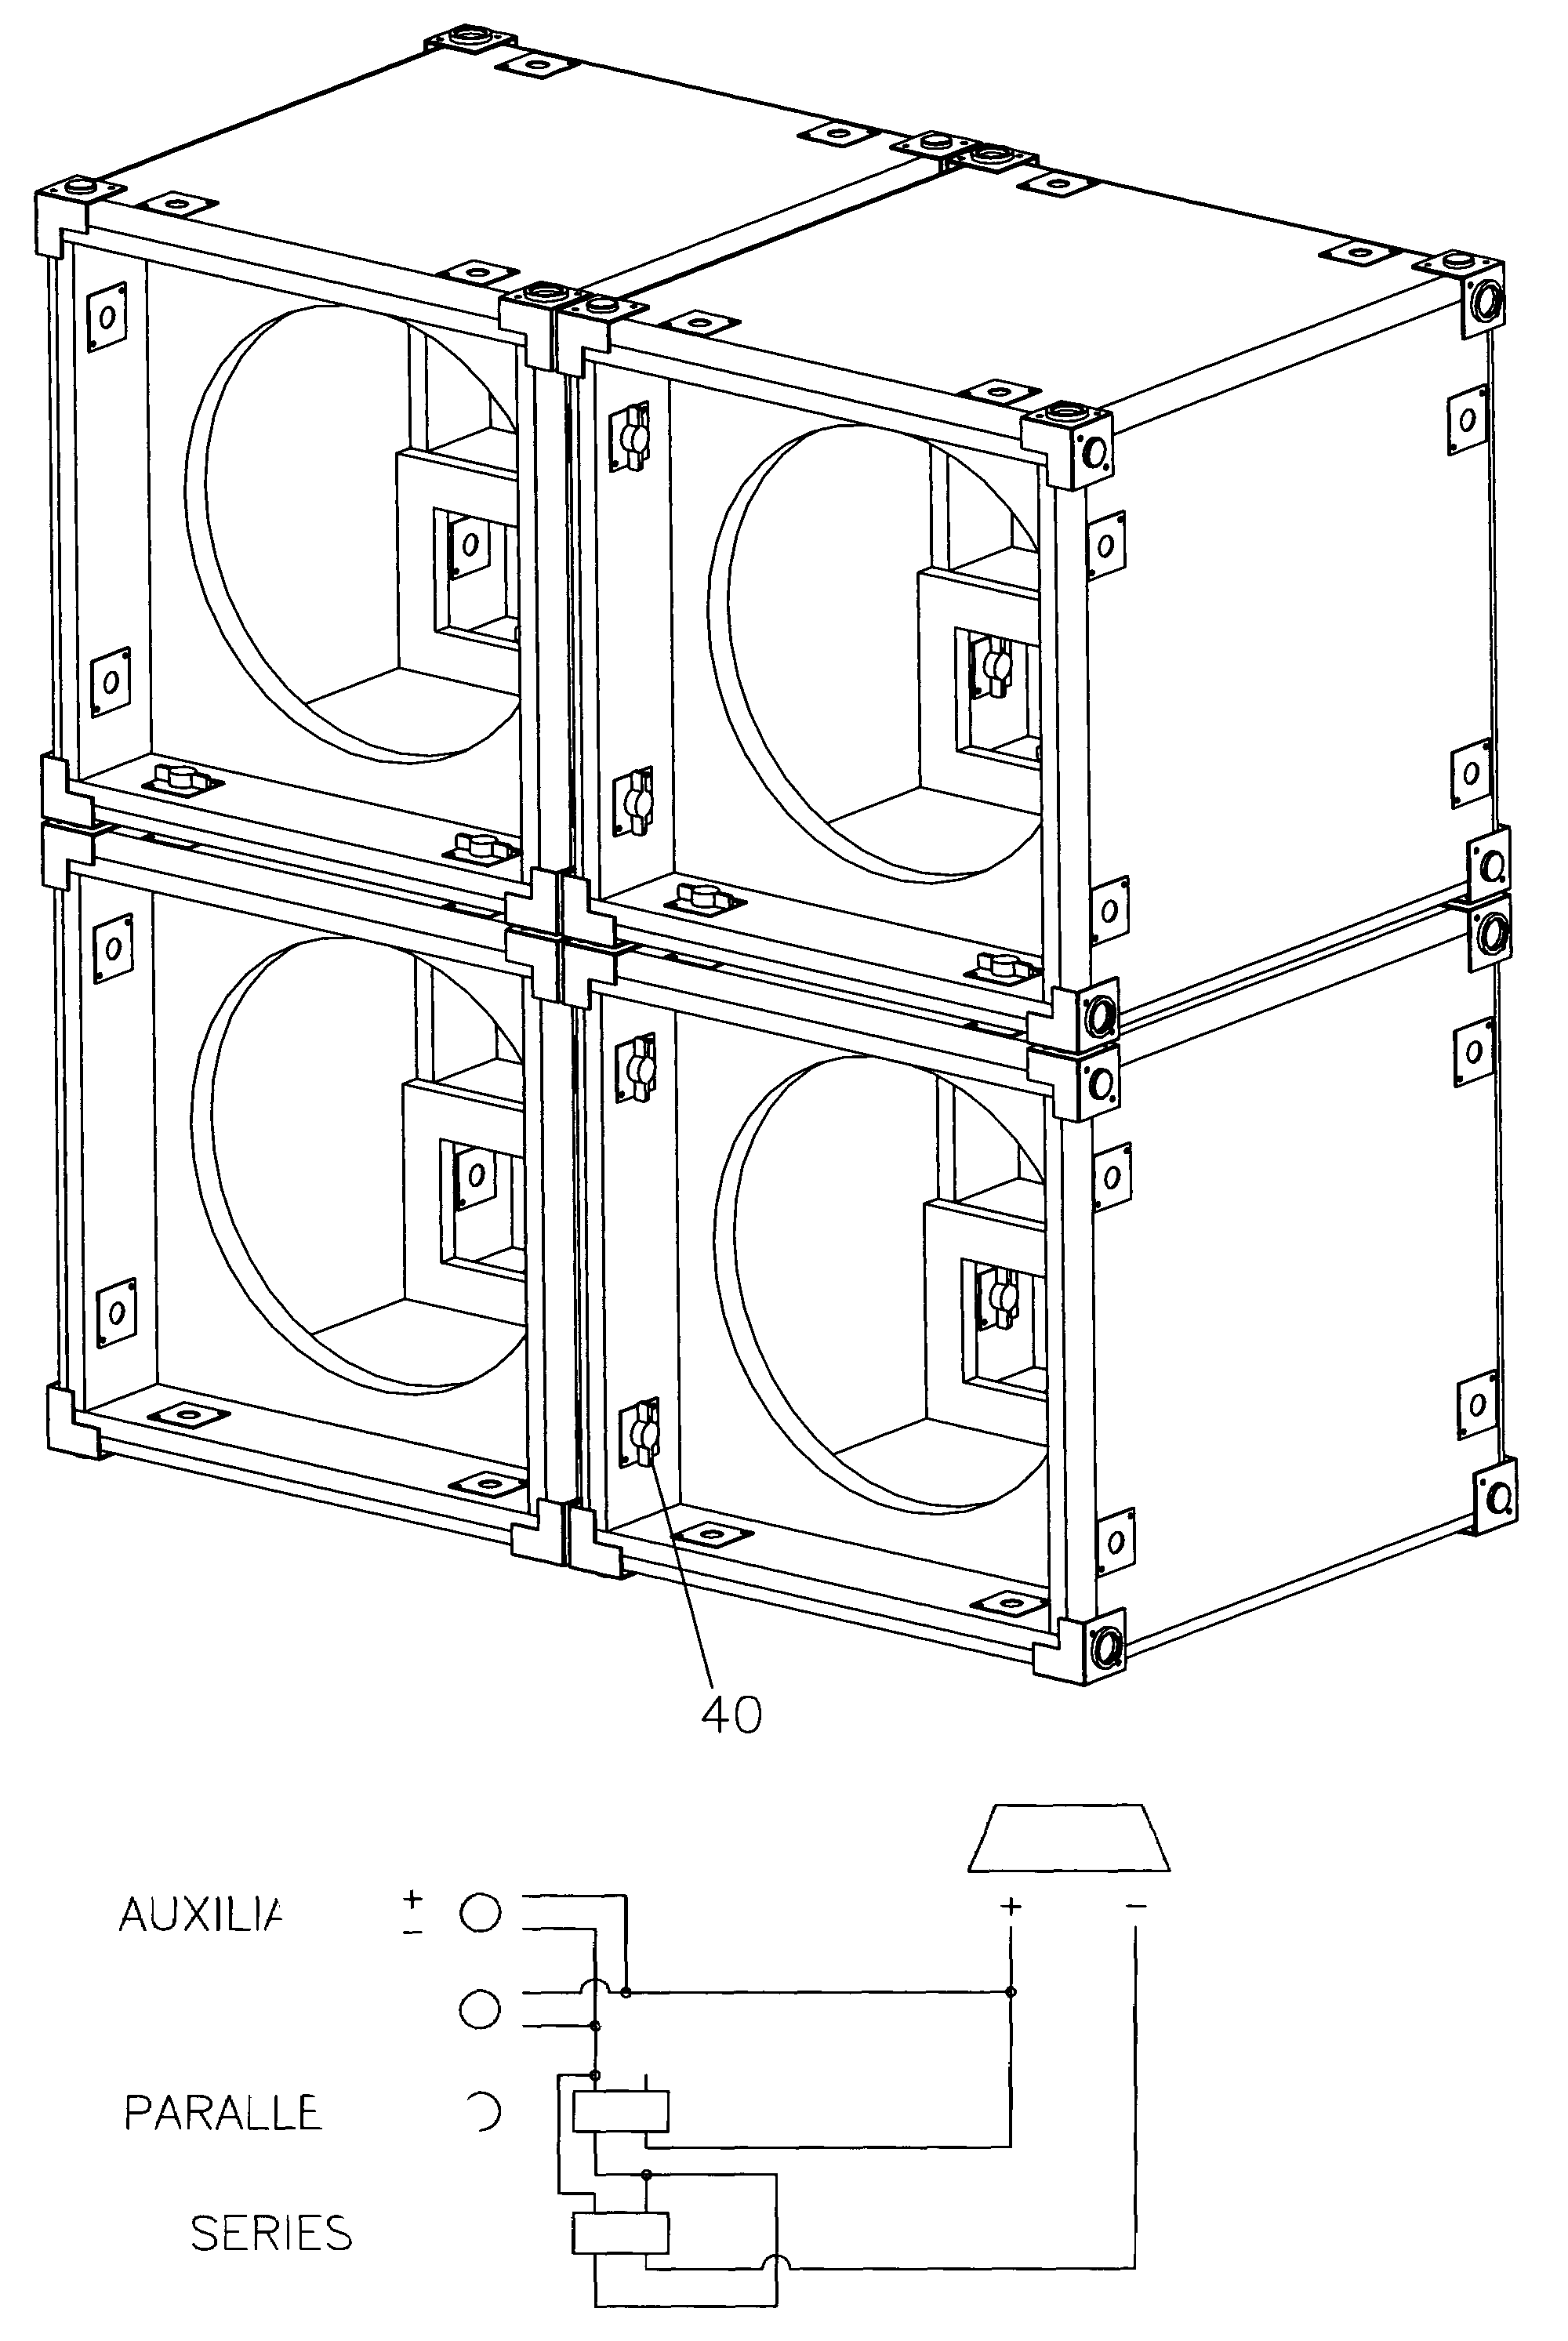 Modular speaker cabinet